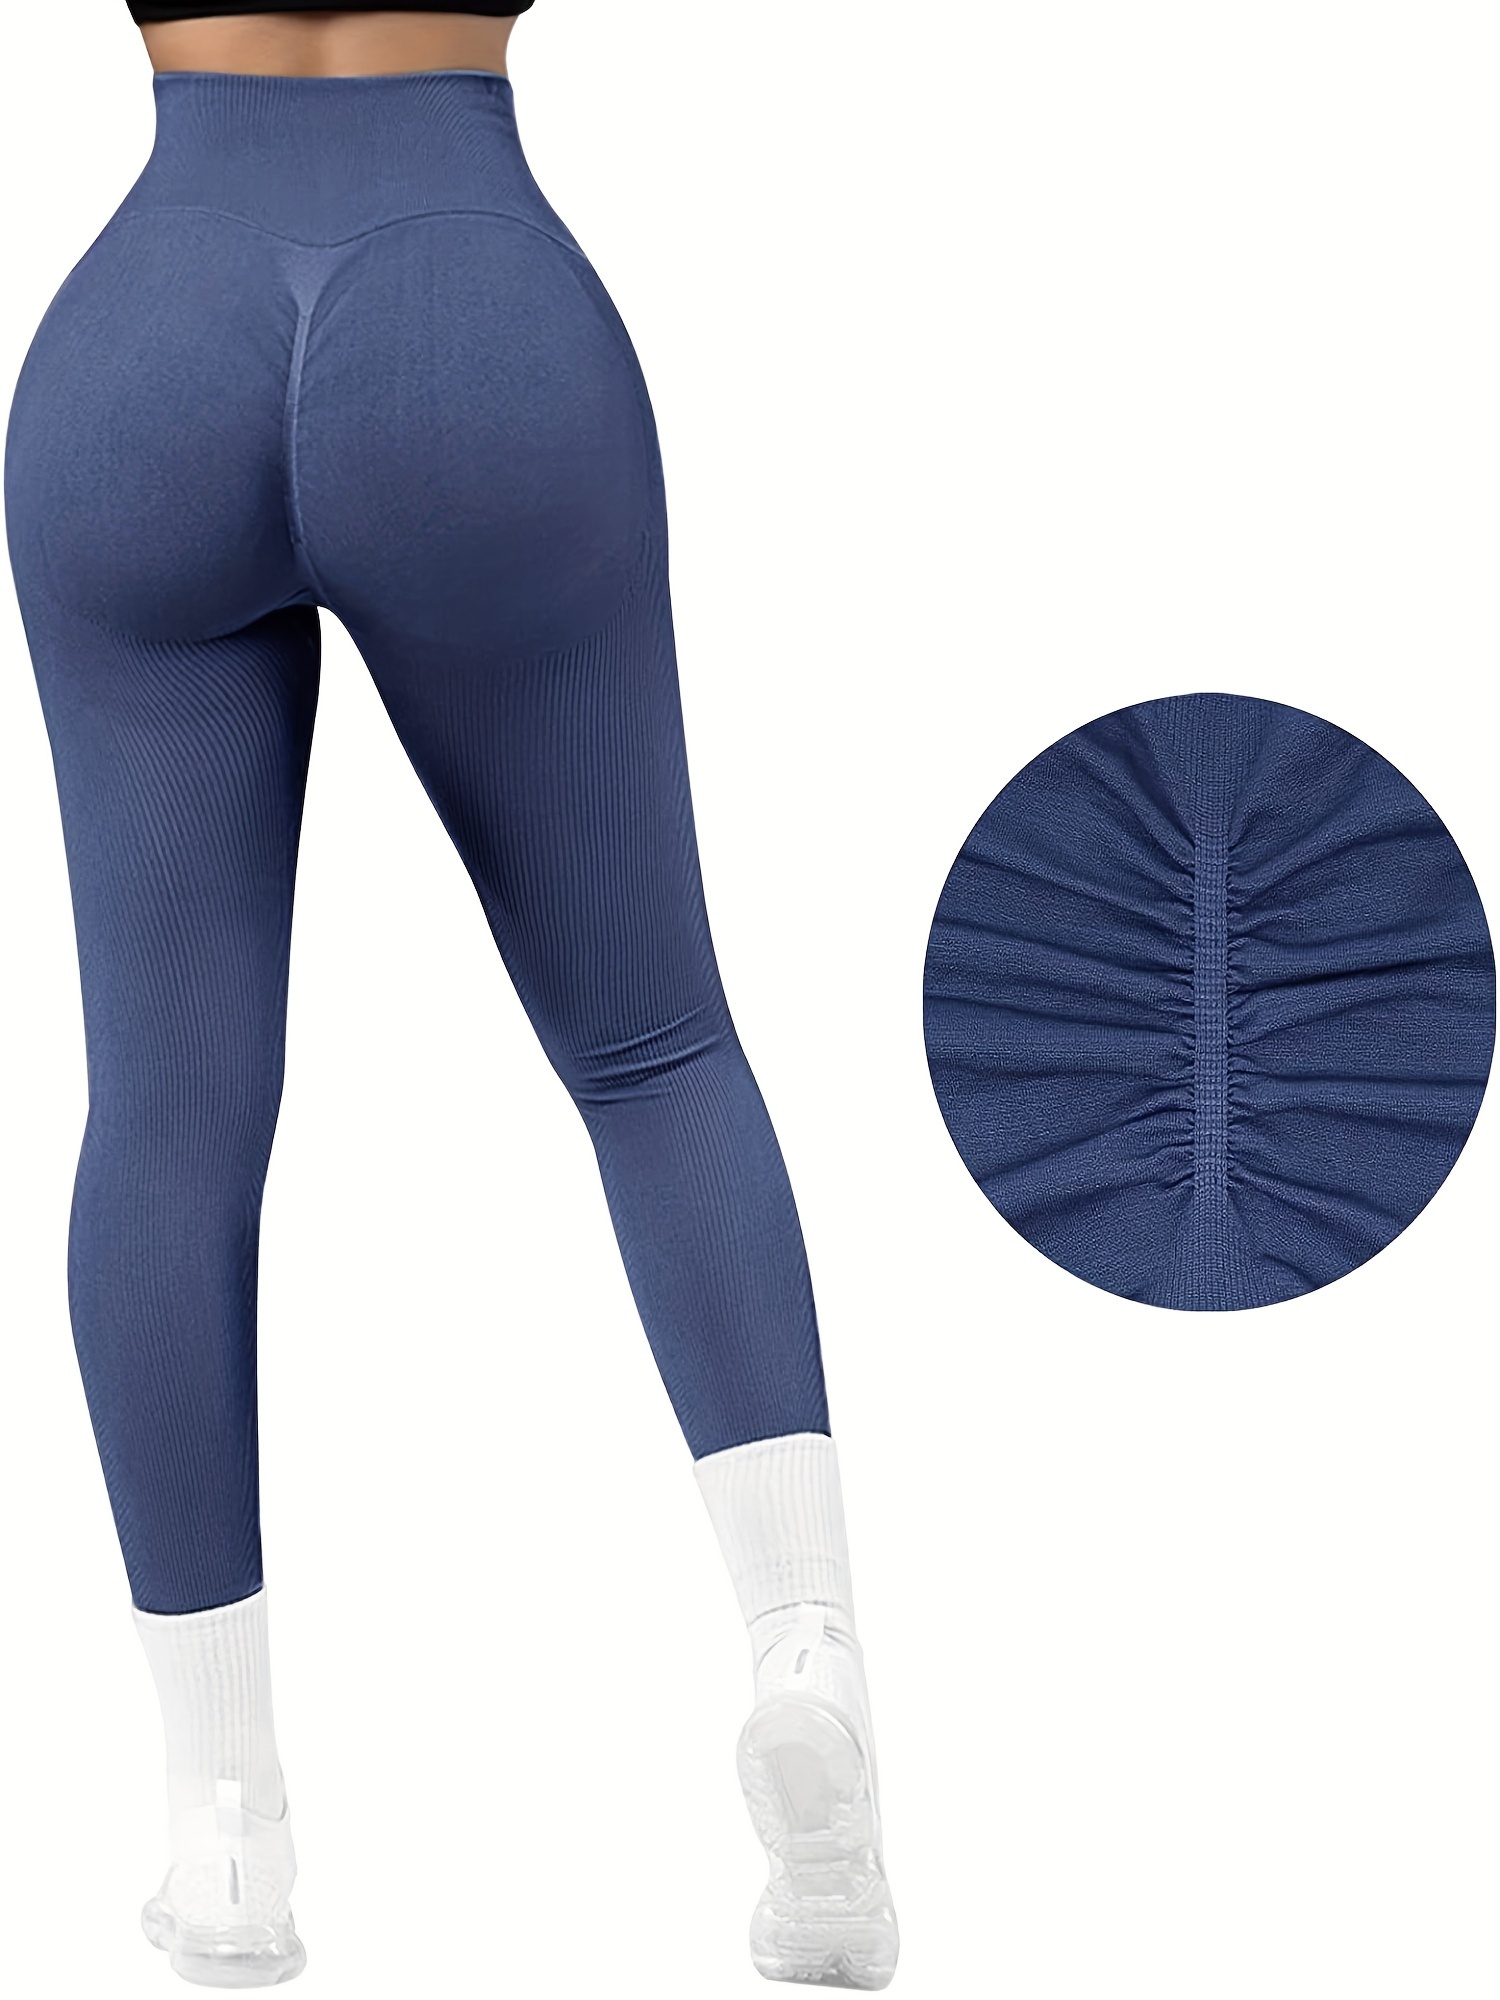 Stylish Navy Blue Polyester Elastane Tights For Women, Tights For Women,  Gym Workout Tights, Women Sports Tight, Women Workout Tight, Women Seamless  Legging - Store Apt, Pathanamthitta